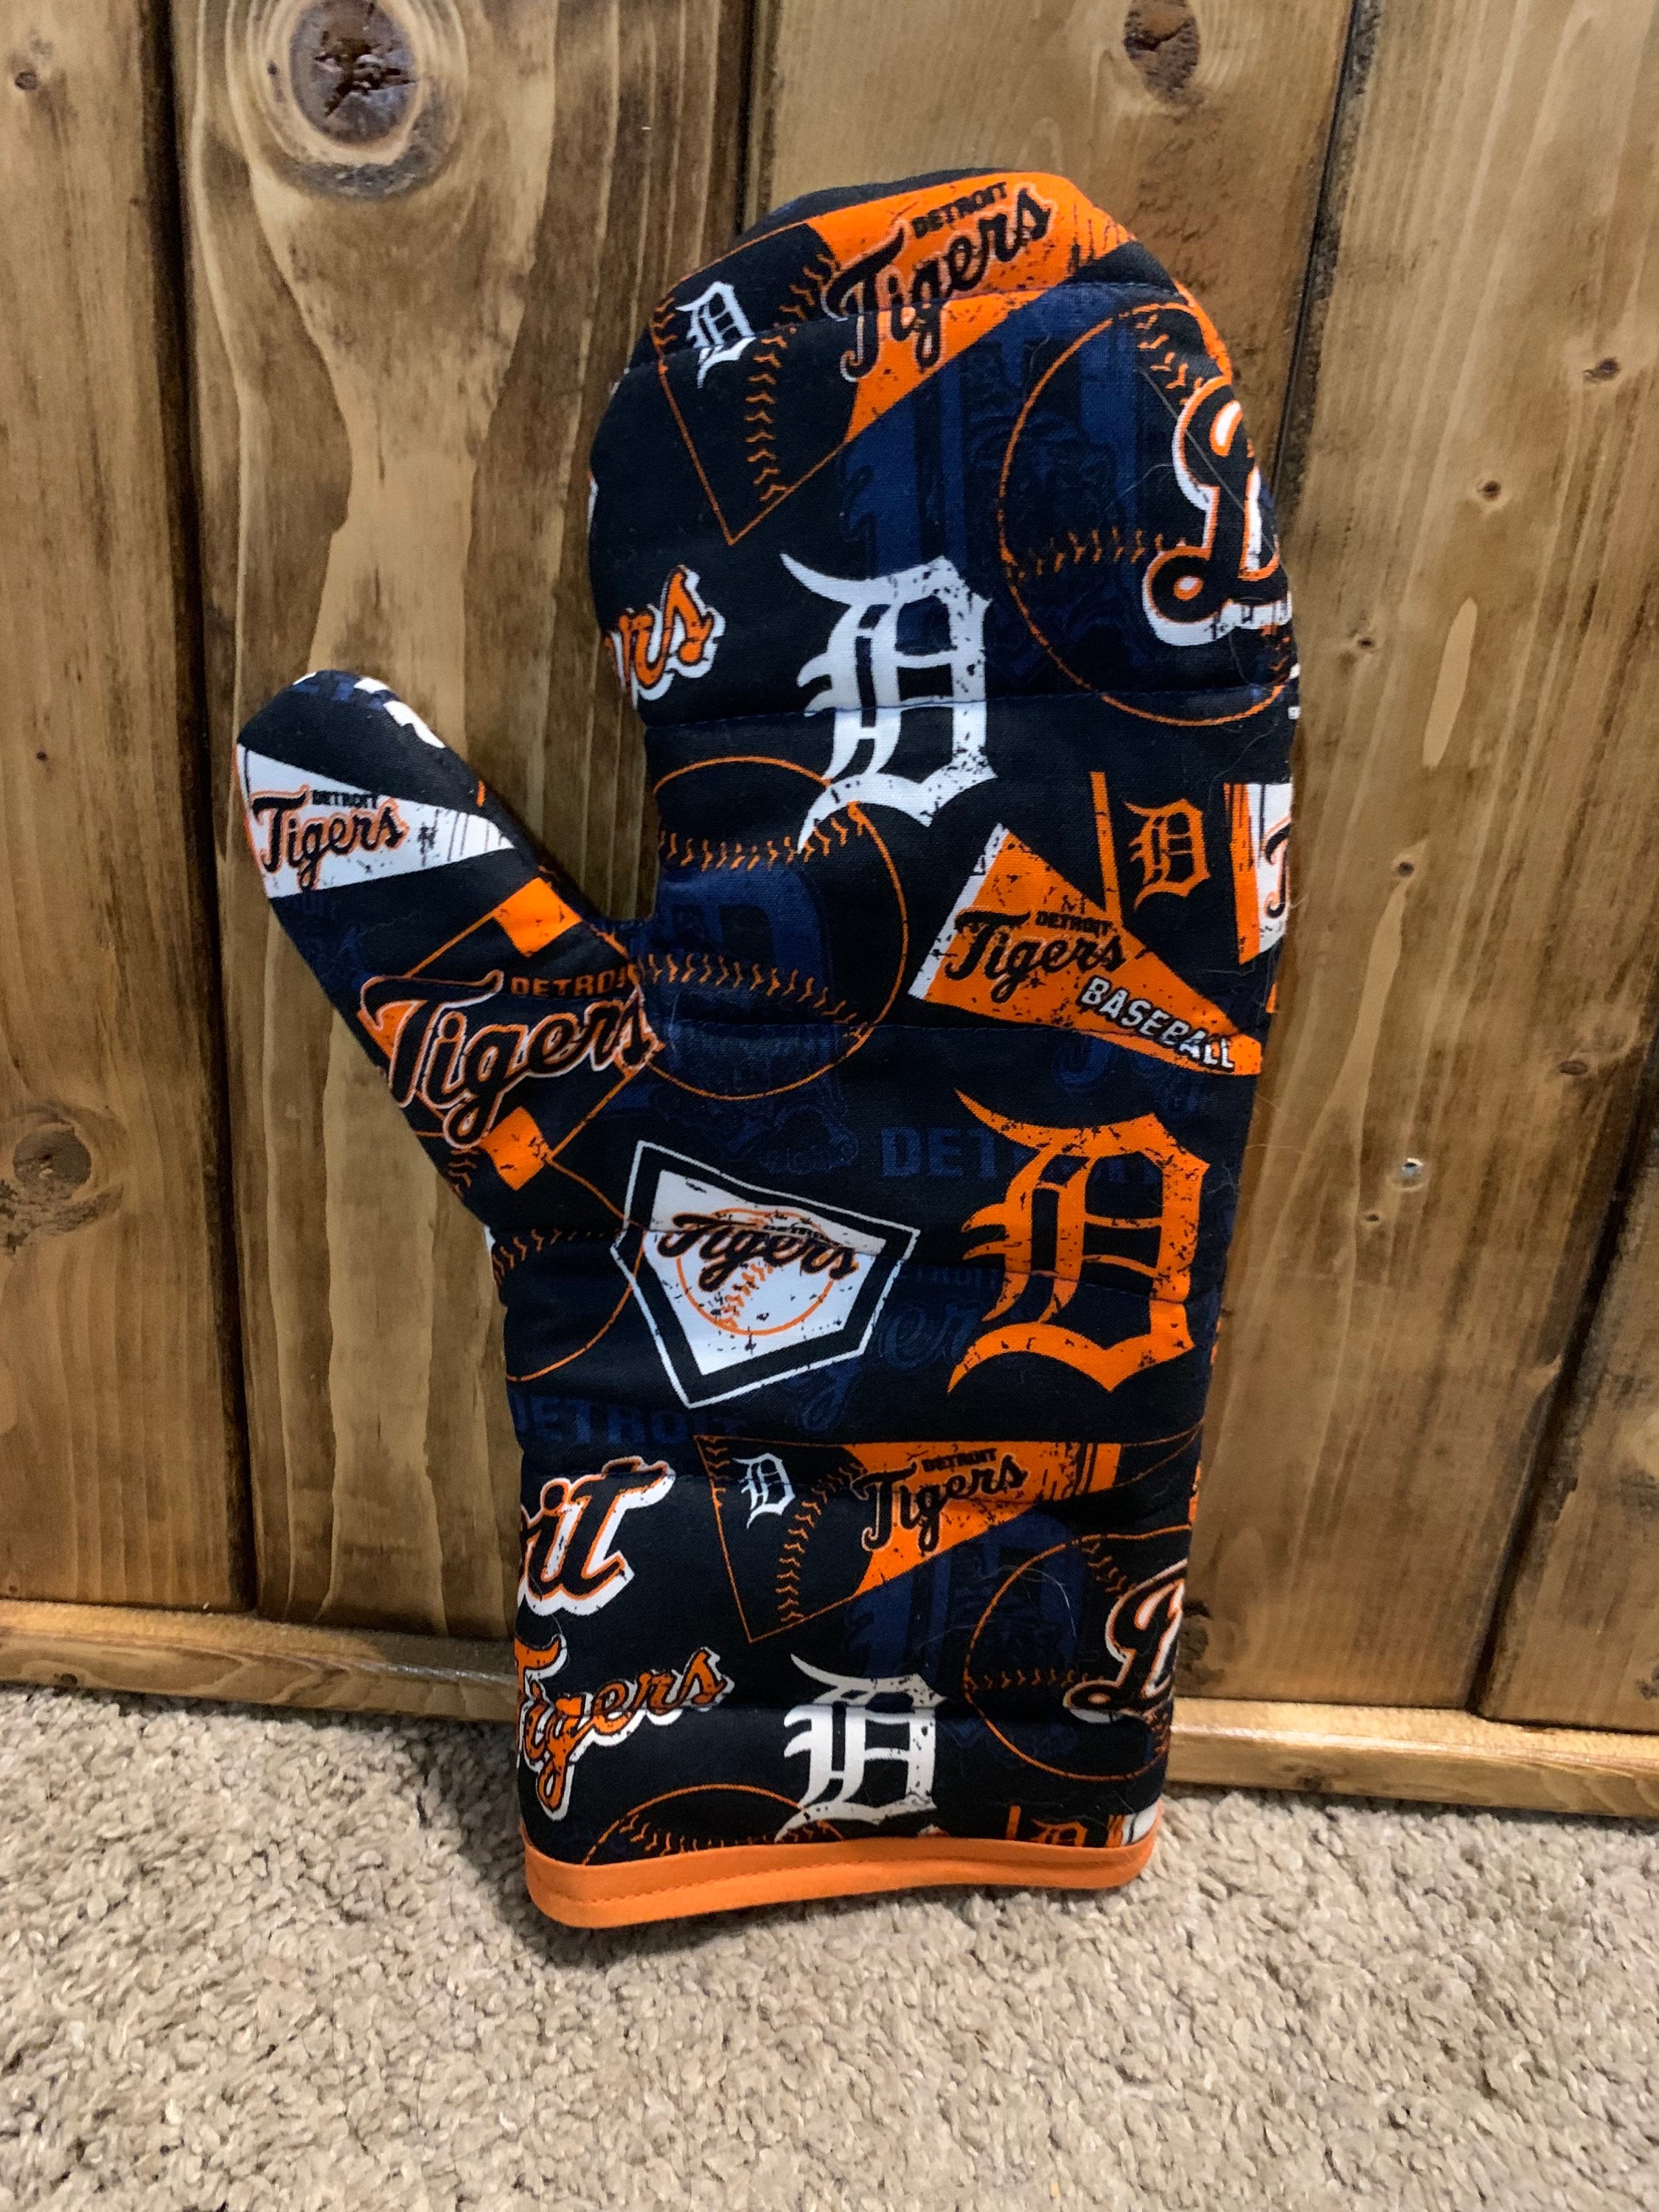 Under armour Detroit Tigers Sports Fan Apparel & Souvenirs for